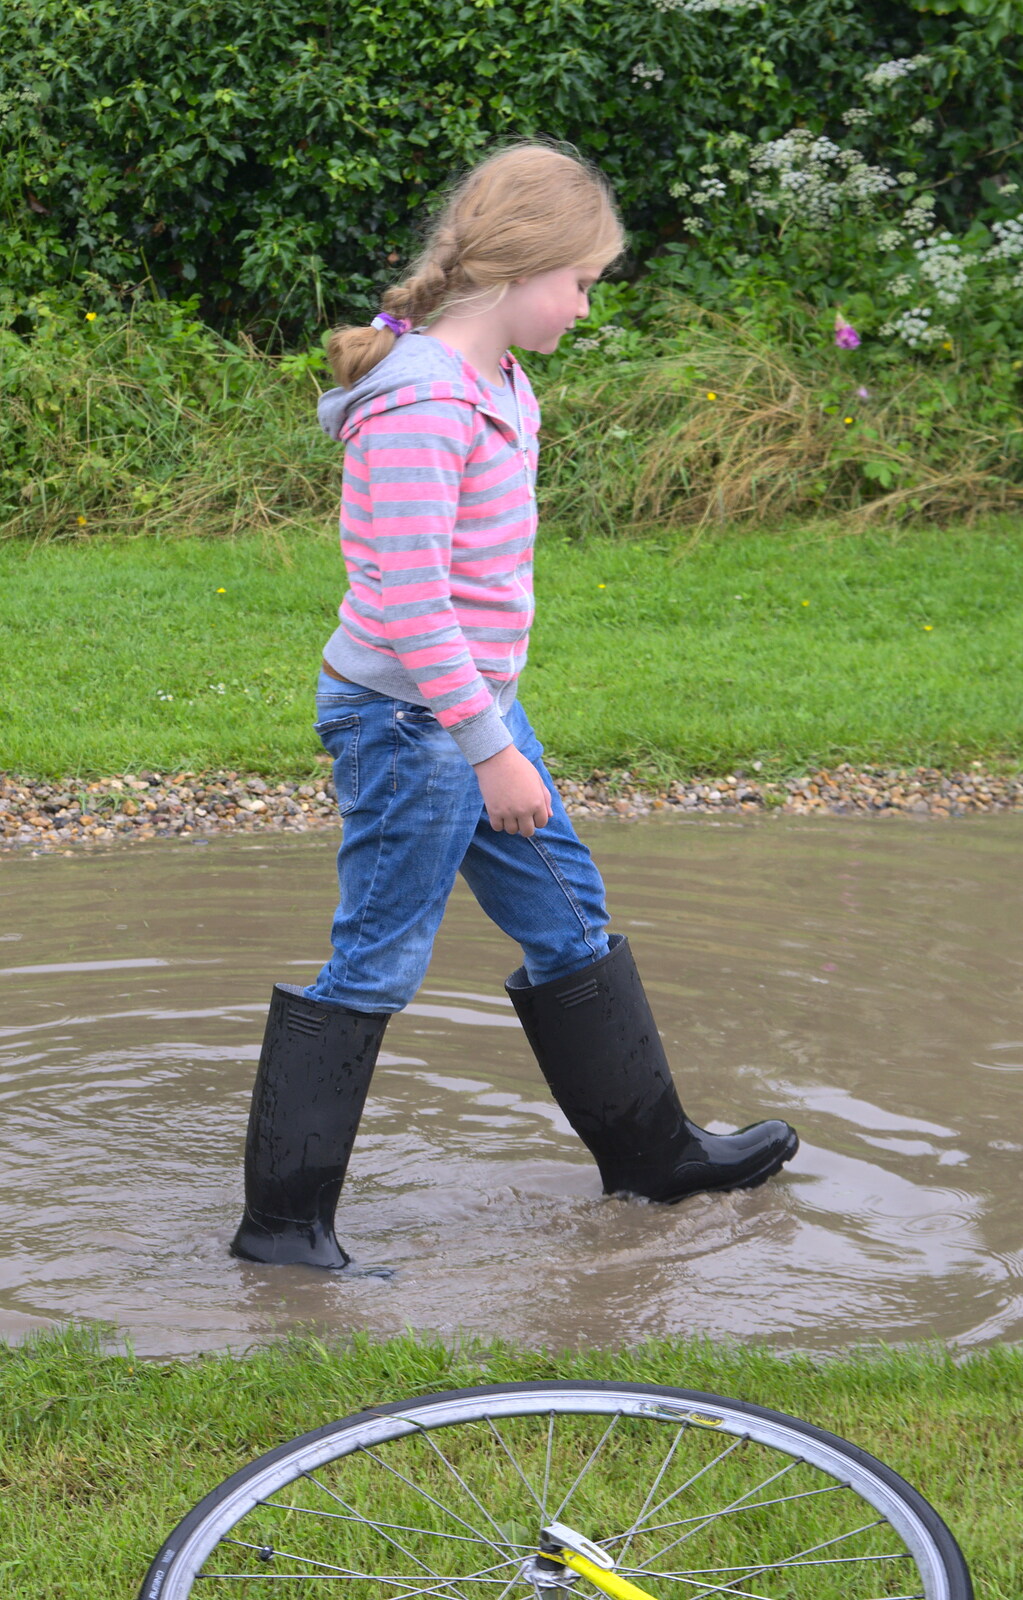 Jessica splashes around in wellies from Thrandeston Pig, Little Green, Thrandeston, Suffolk - 26th June 2016